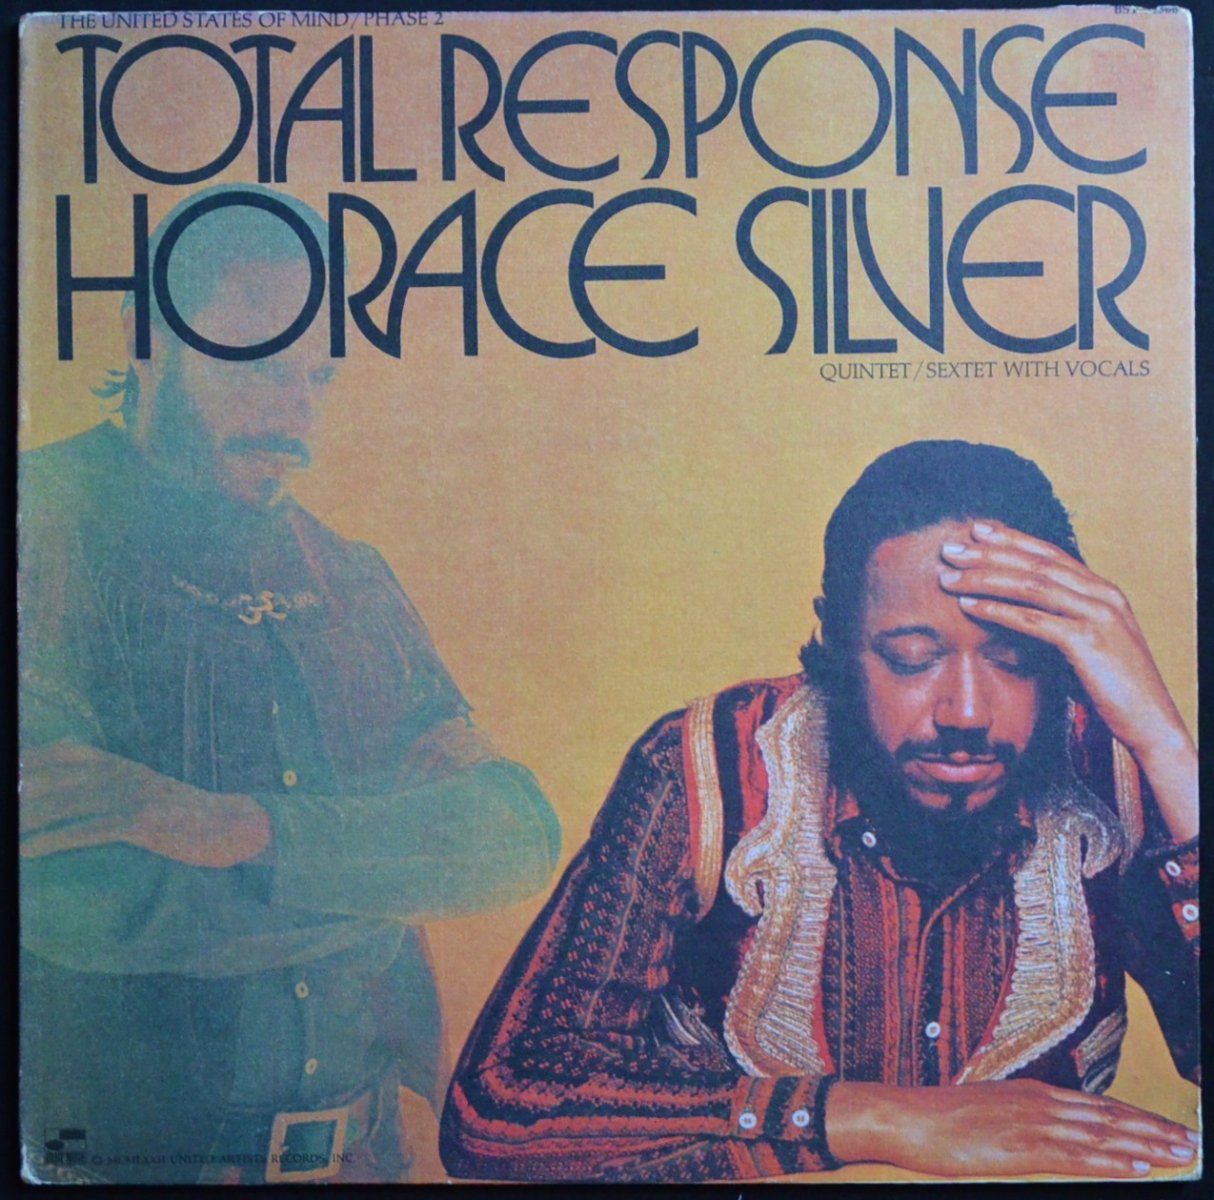 HORACE SILVER QUINTET / SEXTET WITH VOCALS / TOTAL RESPONSE  (LP)
